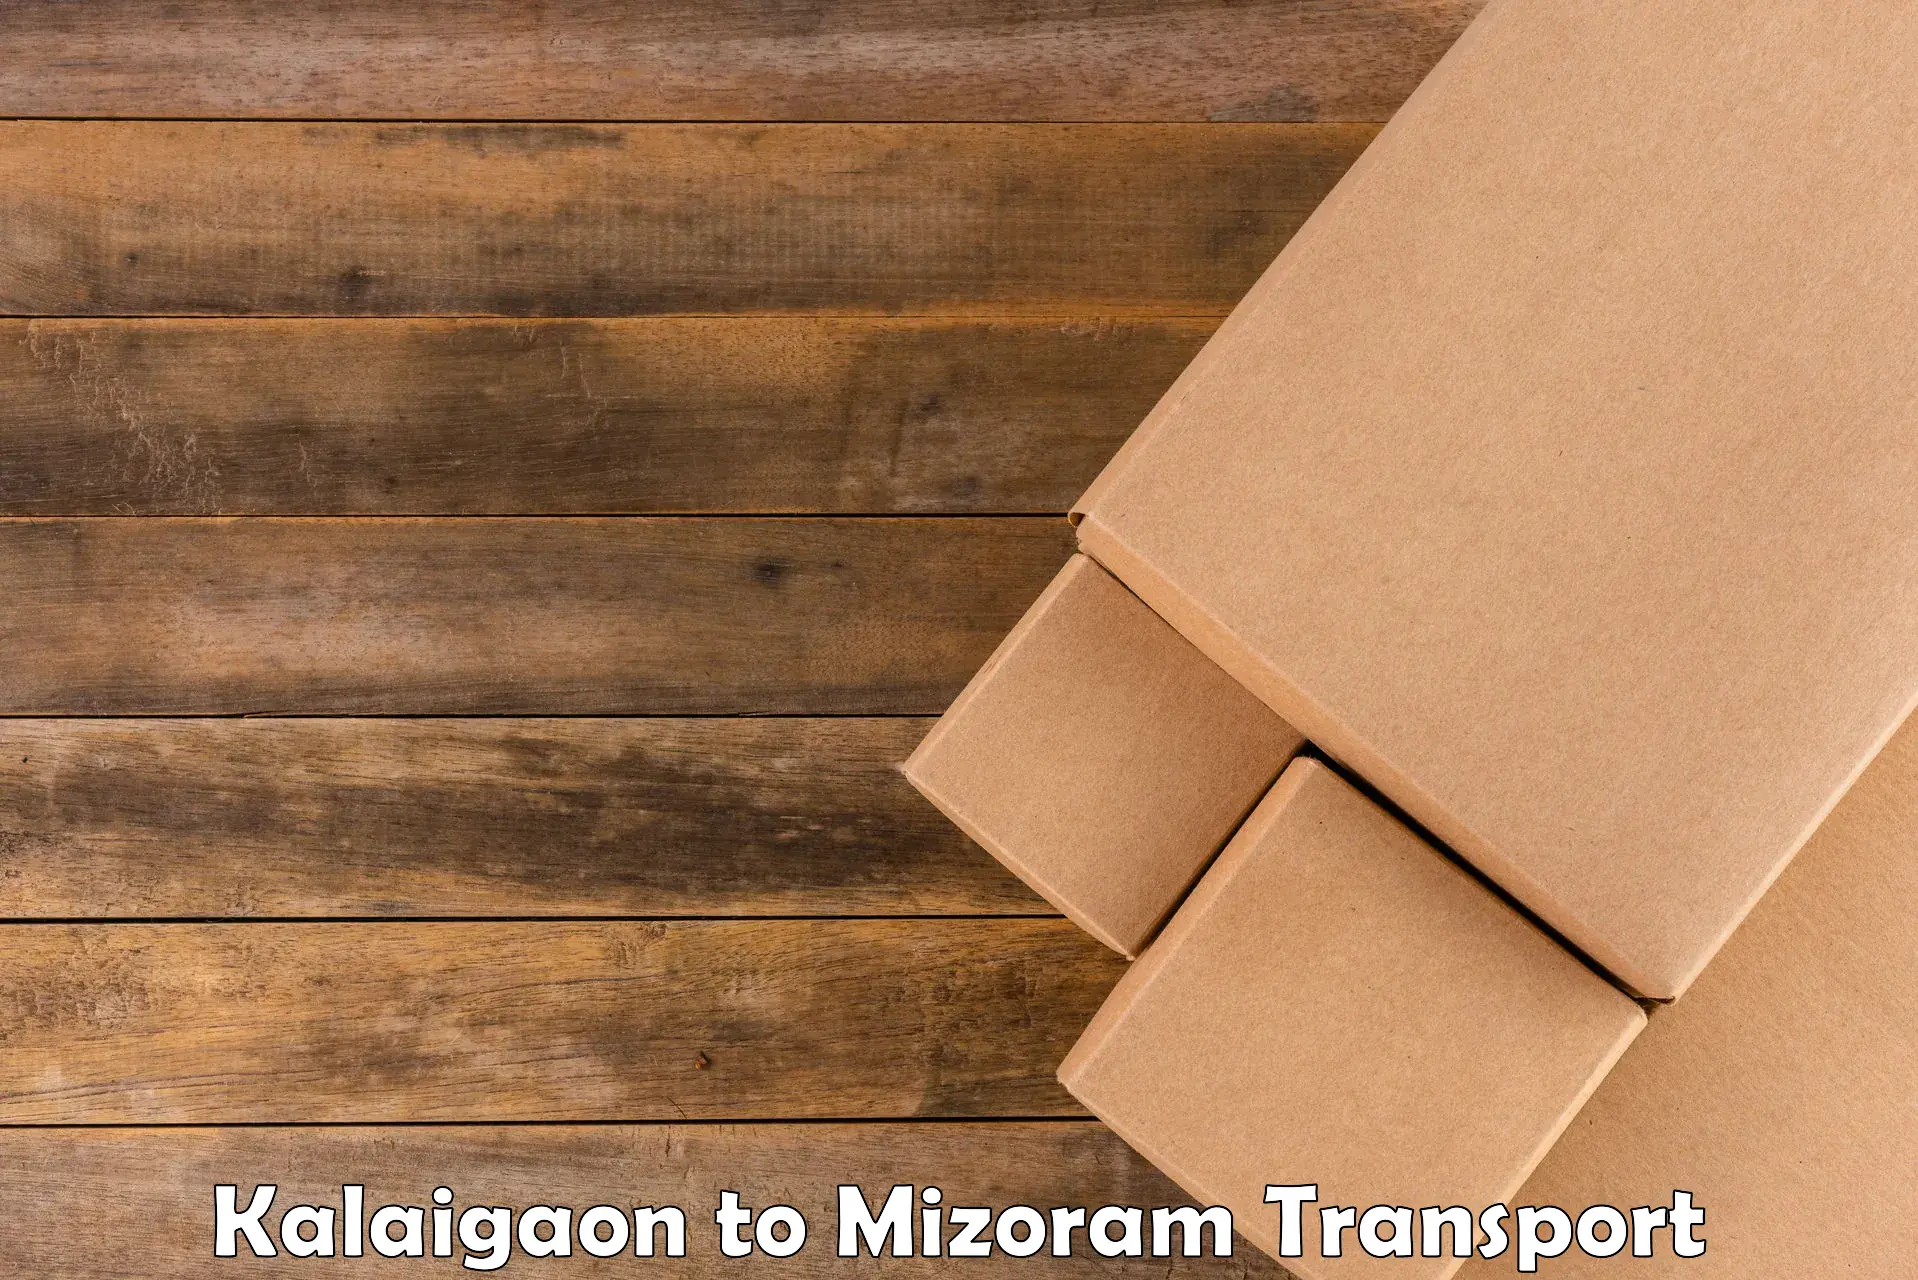 Pick up transport service Kalaigaon to Mizoram